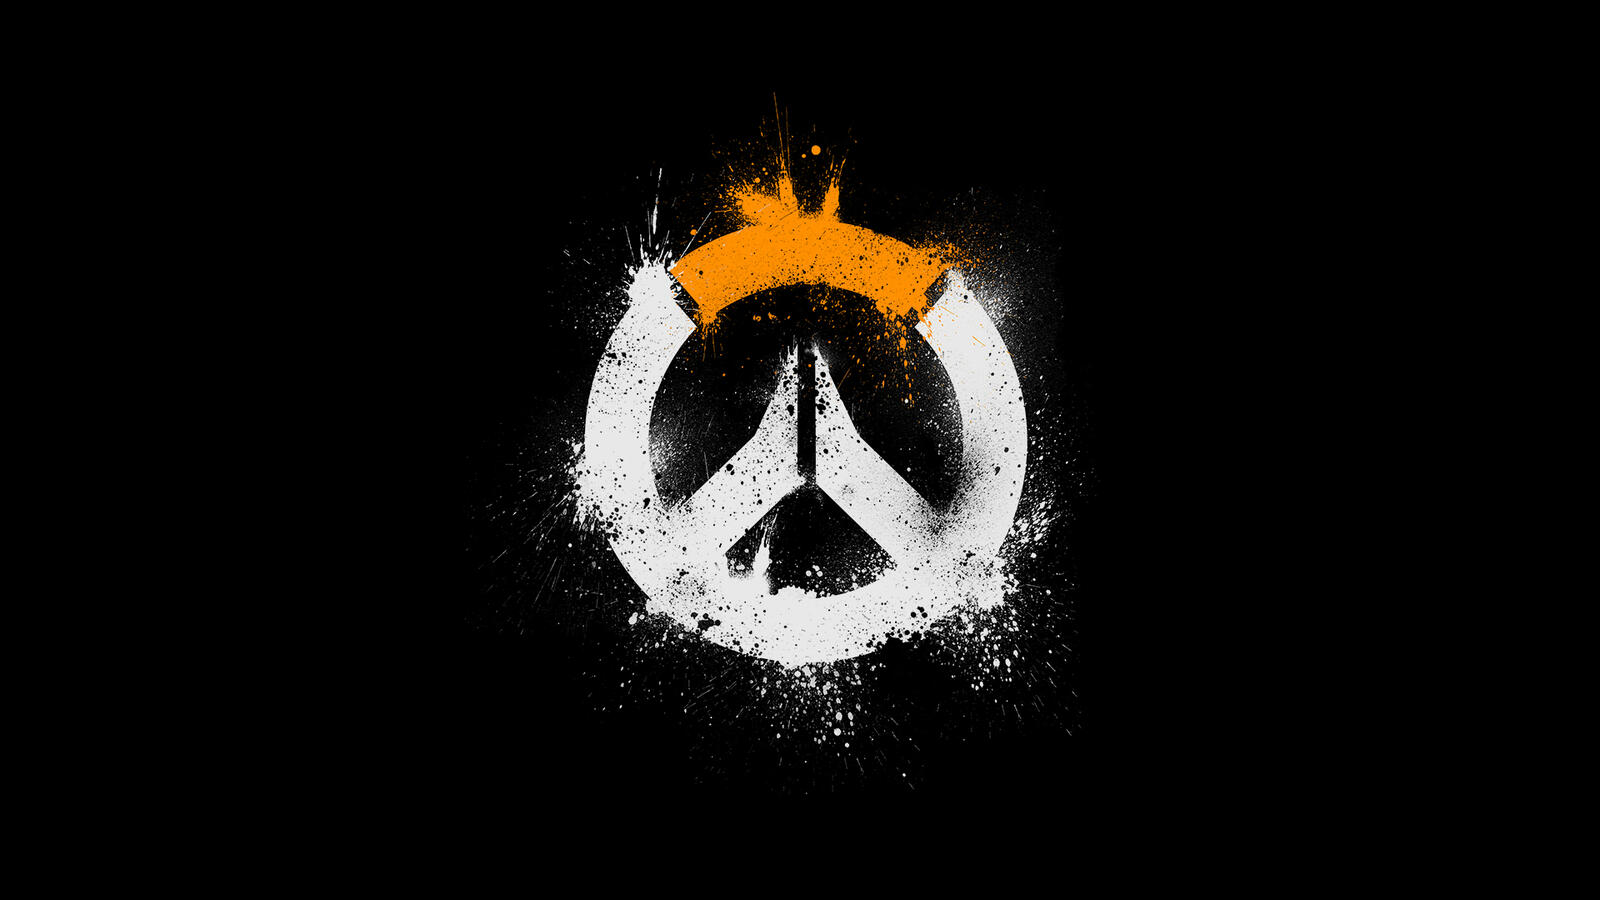 Бесплатное фото Бело-оранжевый логотип игры Overwatch на черном фоне